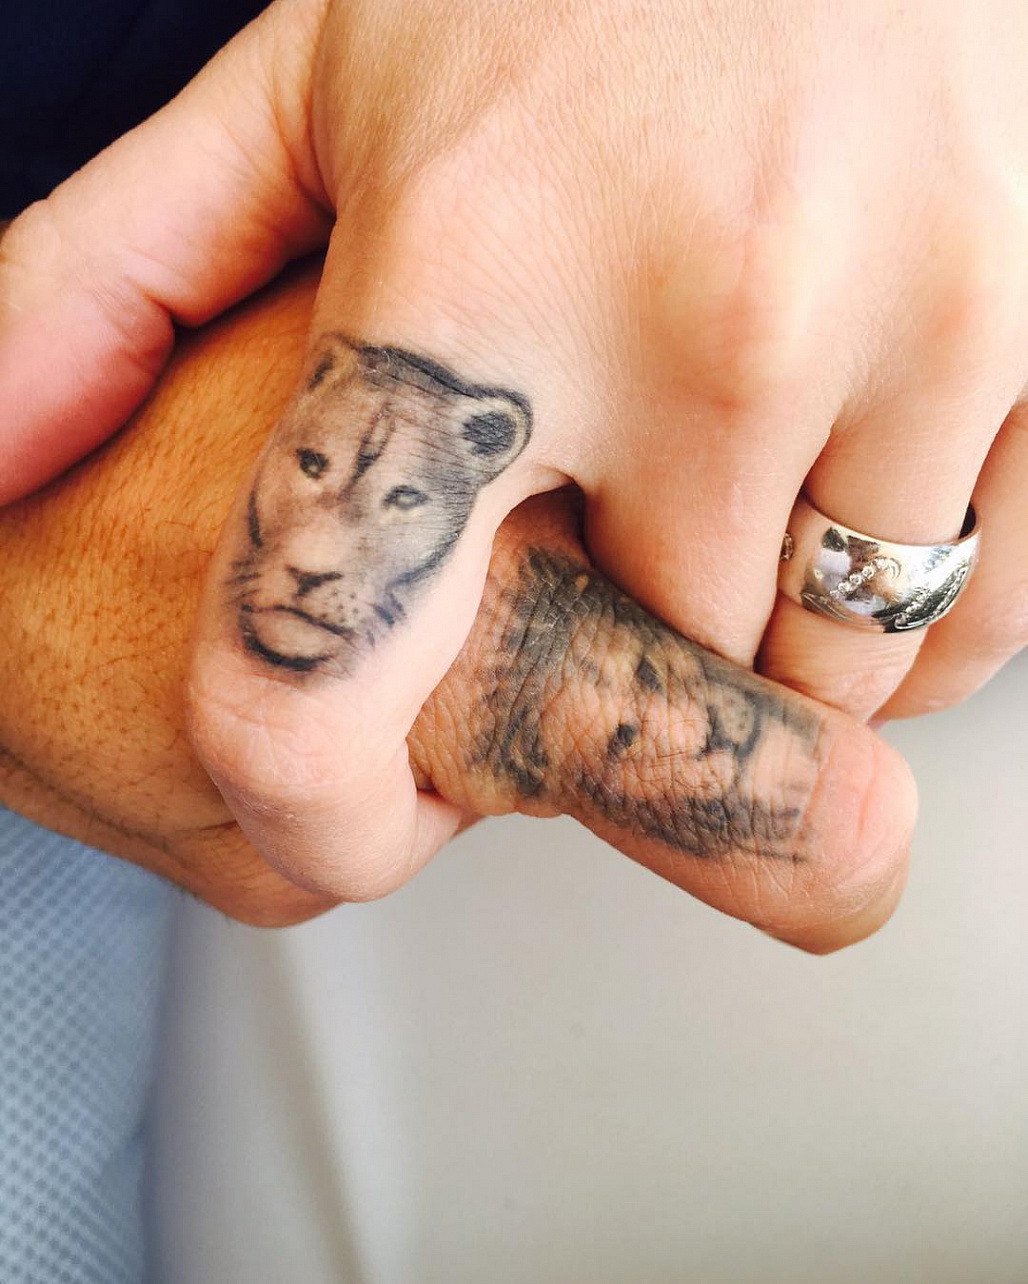 ​Xăm hình đầu hổ, sư tử lên ngón tay cũng là một ý tưởng không tồi